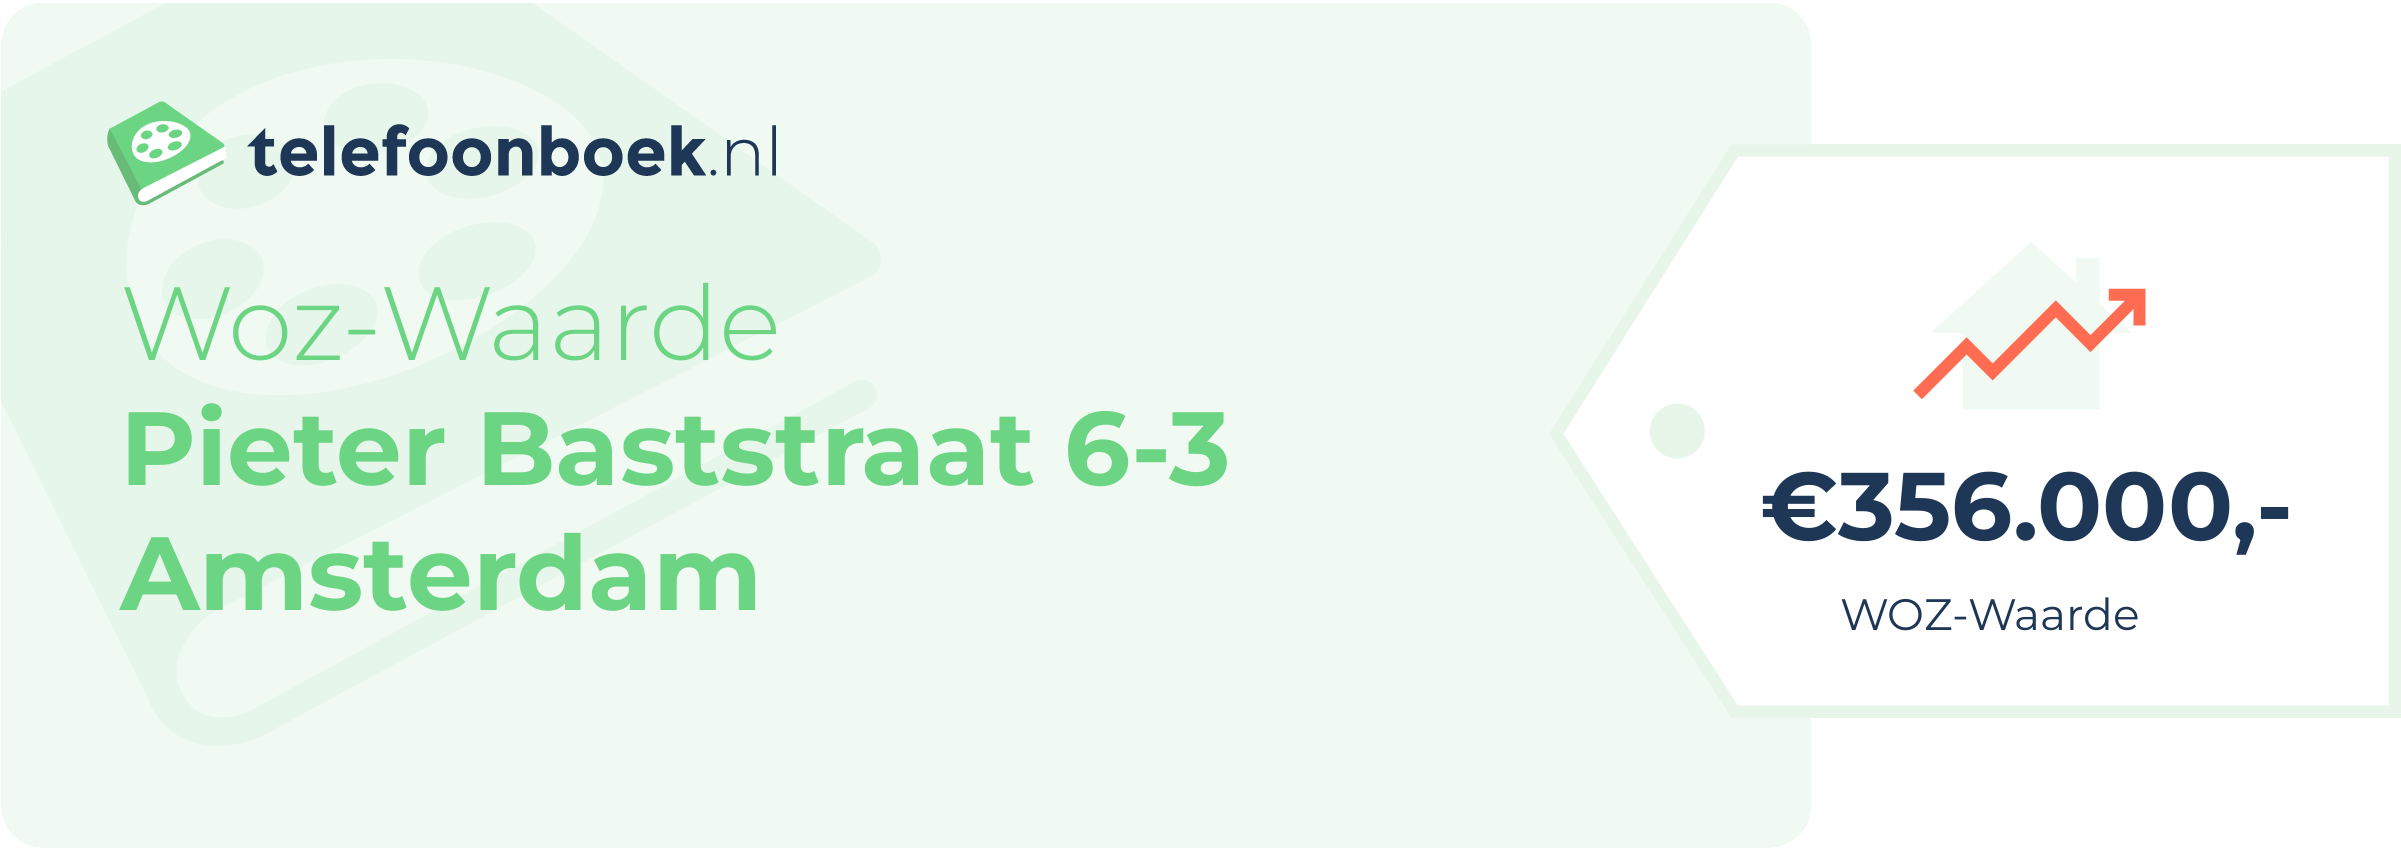 WOZ-waarde Pieter Baststraat 6-3 Amsterdam